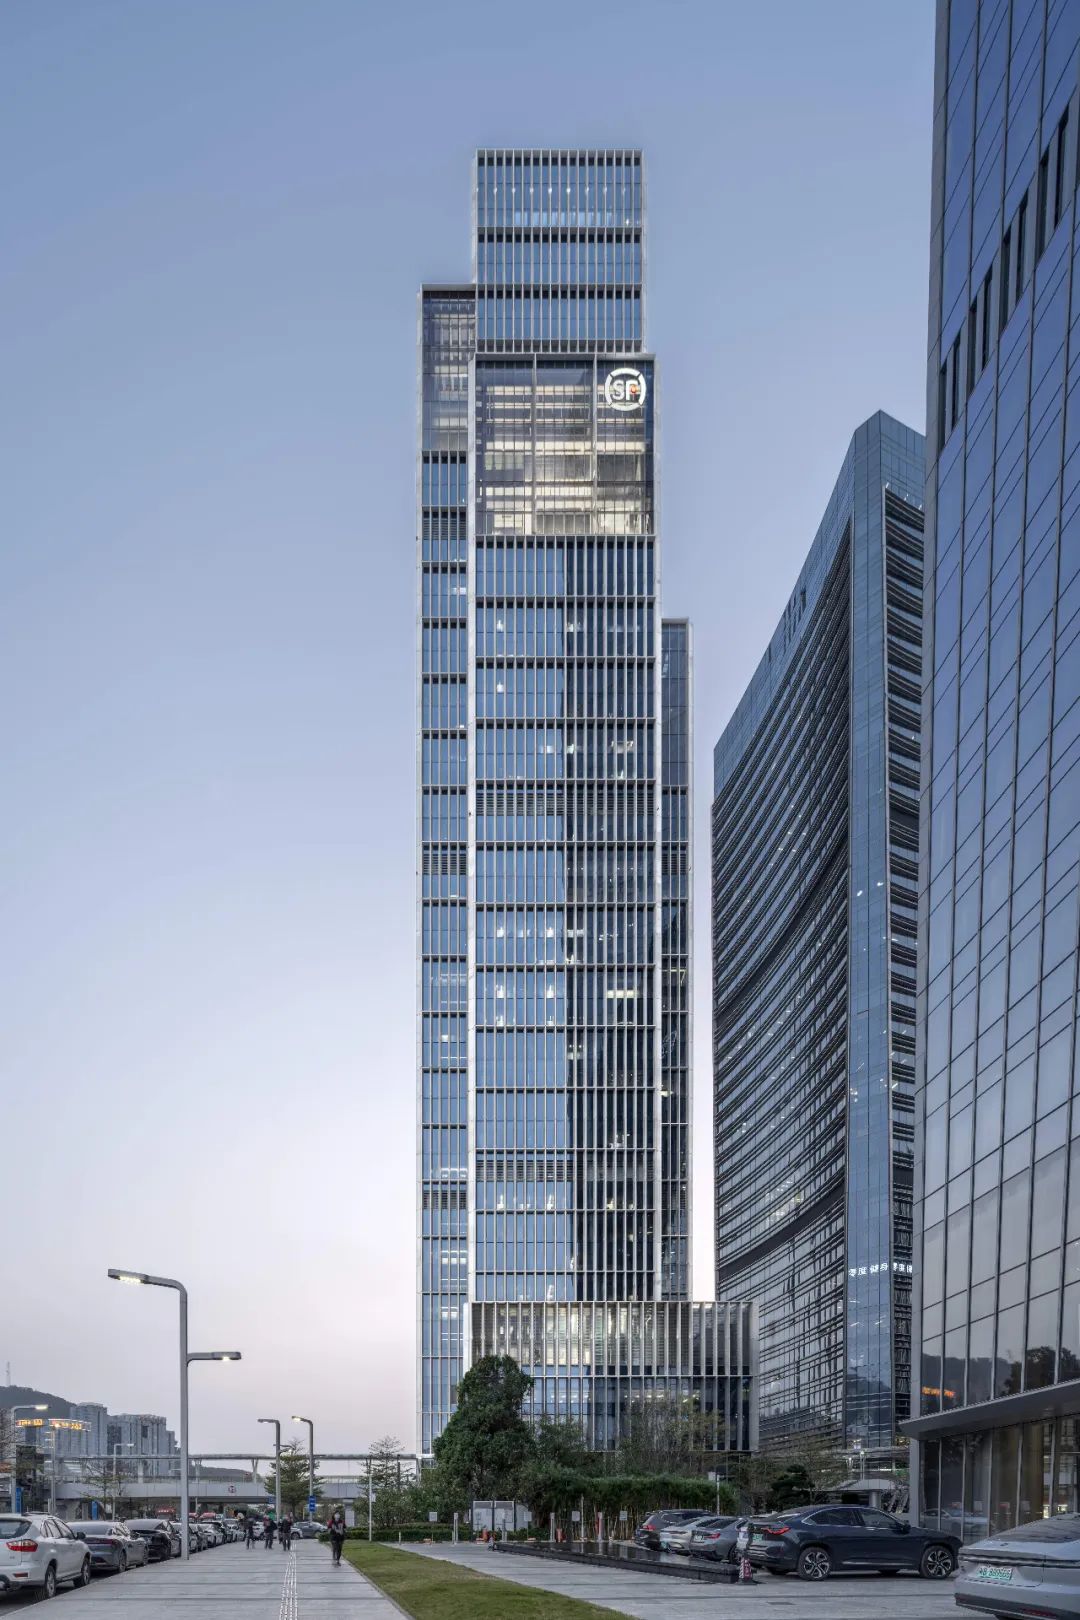 玛格及合伙人建筑师事务所于2015年设计中标的顺丰总部大厦已在深圳